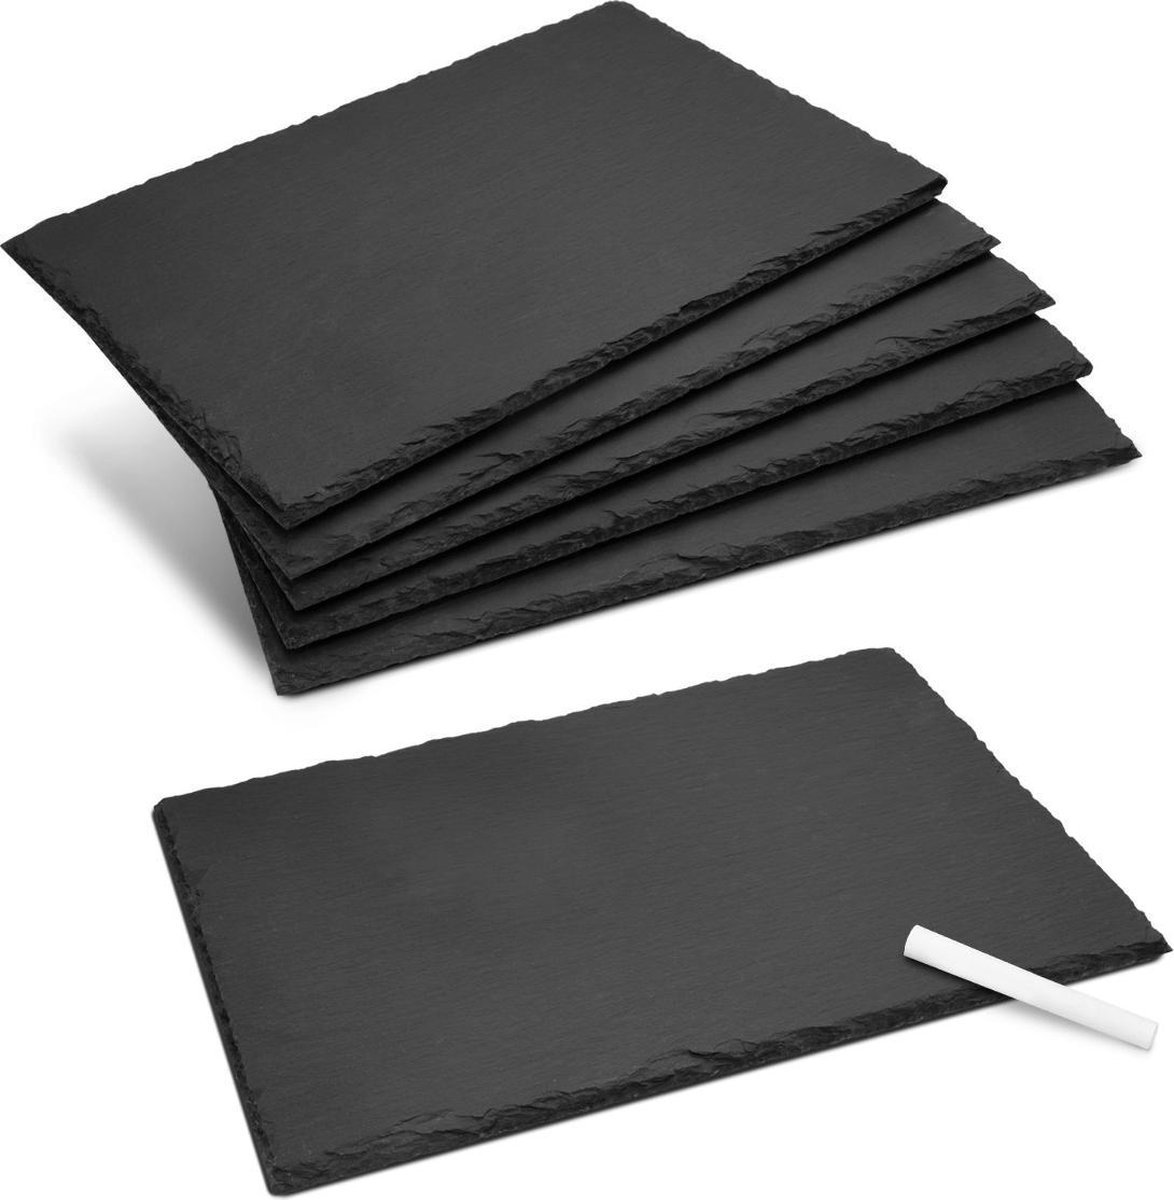 Navaris serveerplaten van natuurlijk leisteen - 30 x 20 cm - Anti-kraslaag voor extra bescherming - Voor kaasplanken, vleesplanken of tapas - 6 stuks